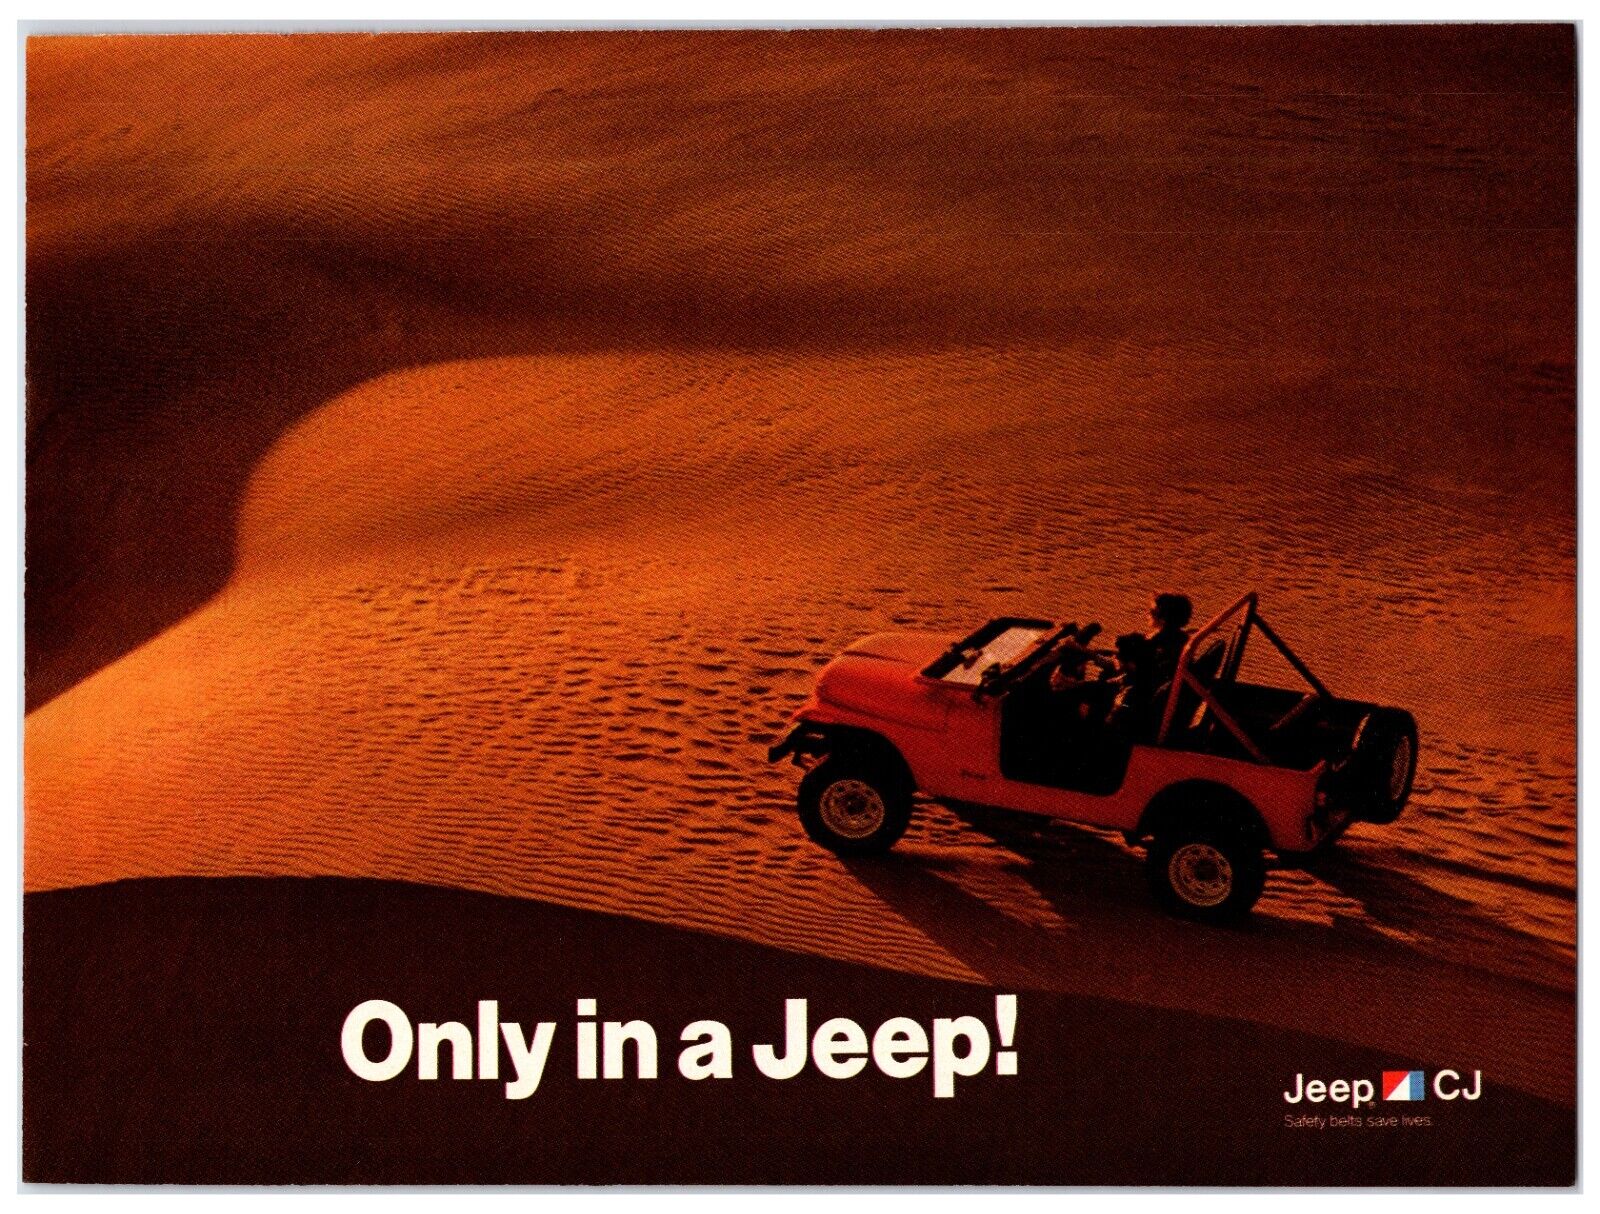 Original 1985 Jeep Cj's - Original Print Ad (8x11) *Vintage Advertisement*